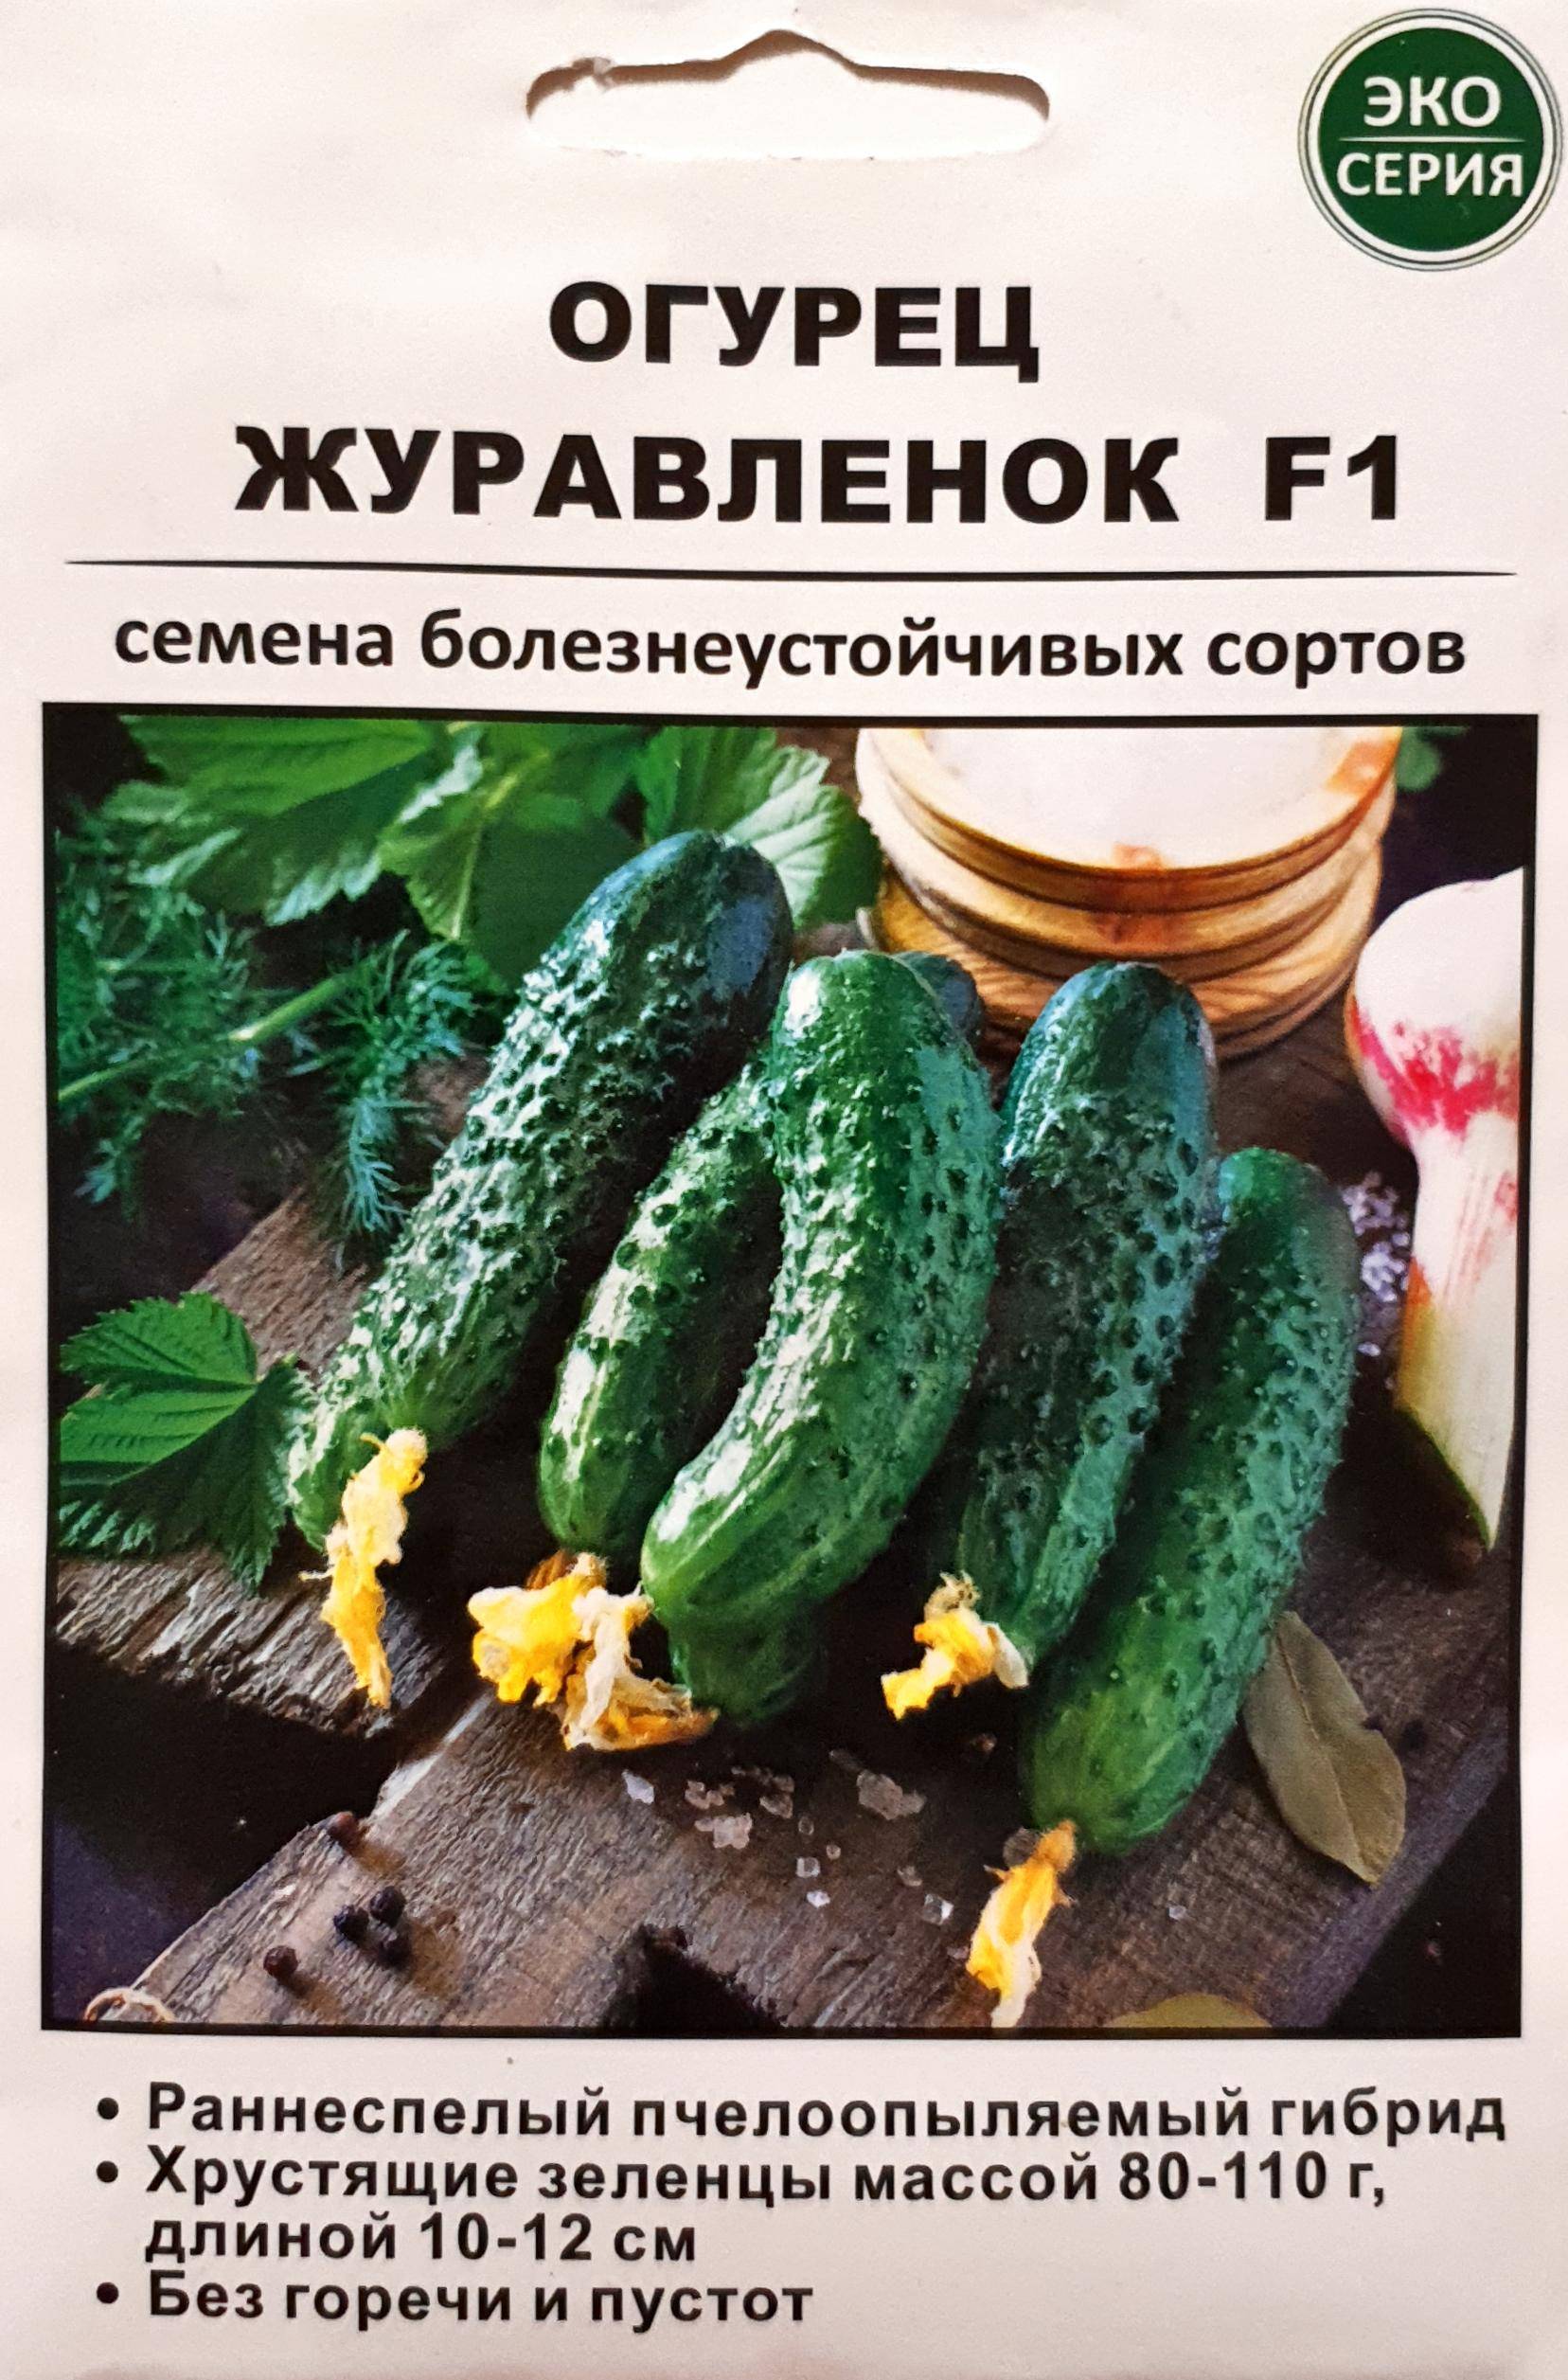 Огурец журавленок f1: описание сорта, выращивание и уход с фото